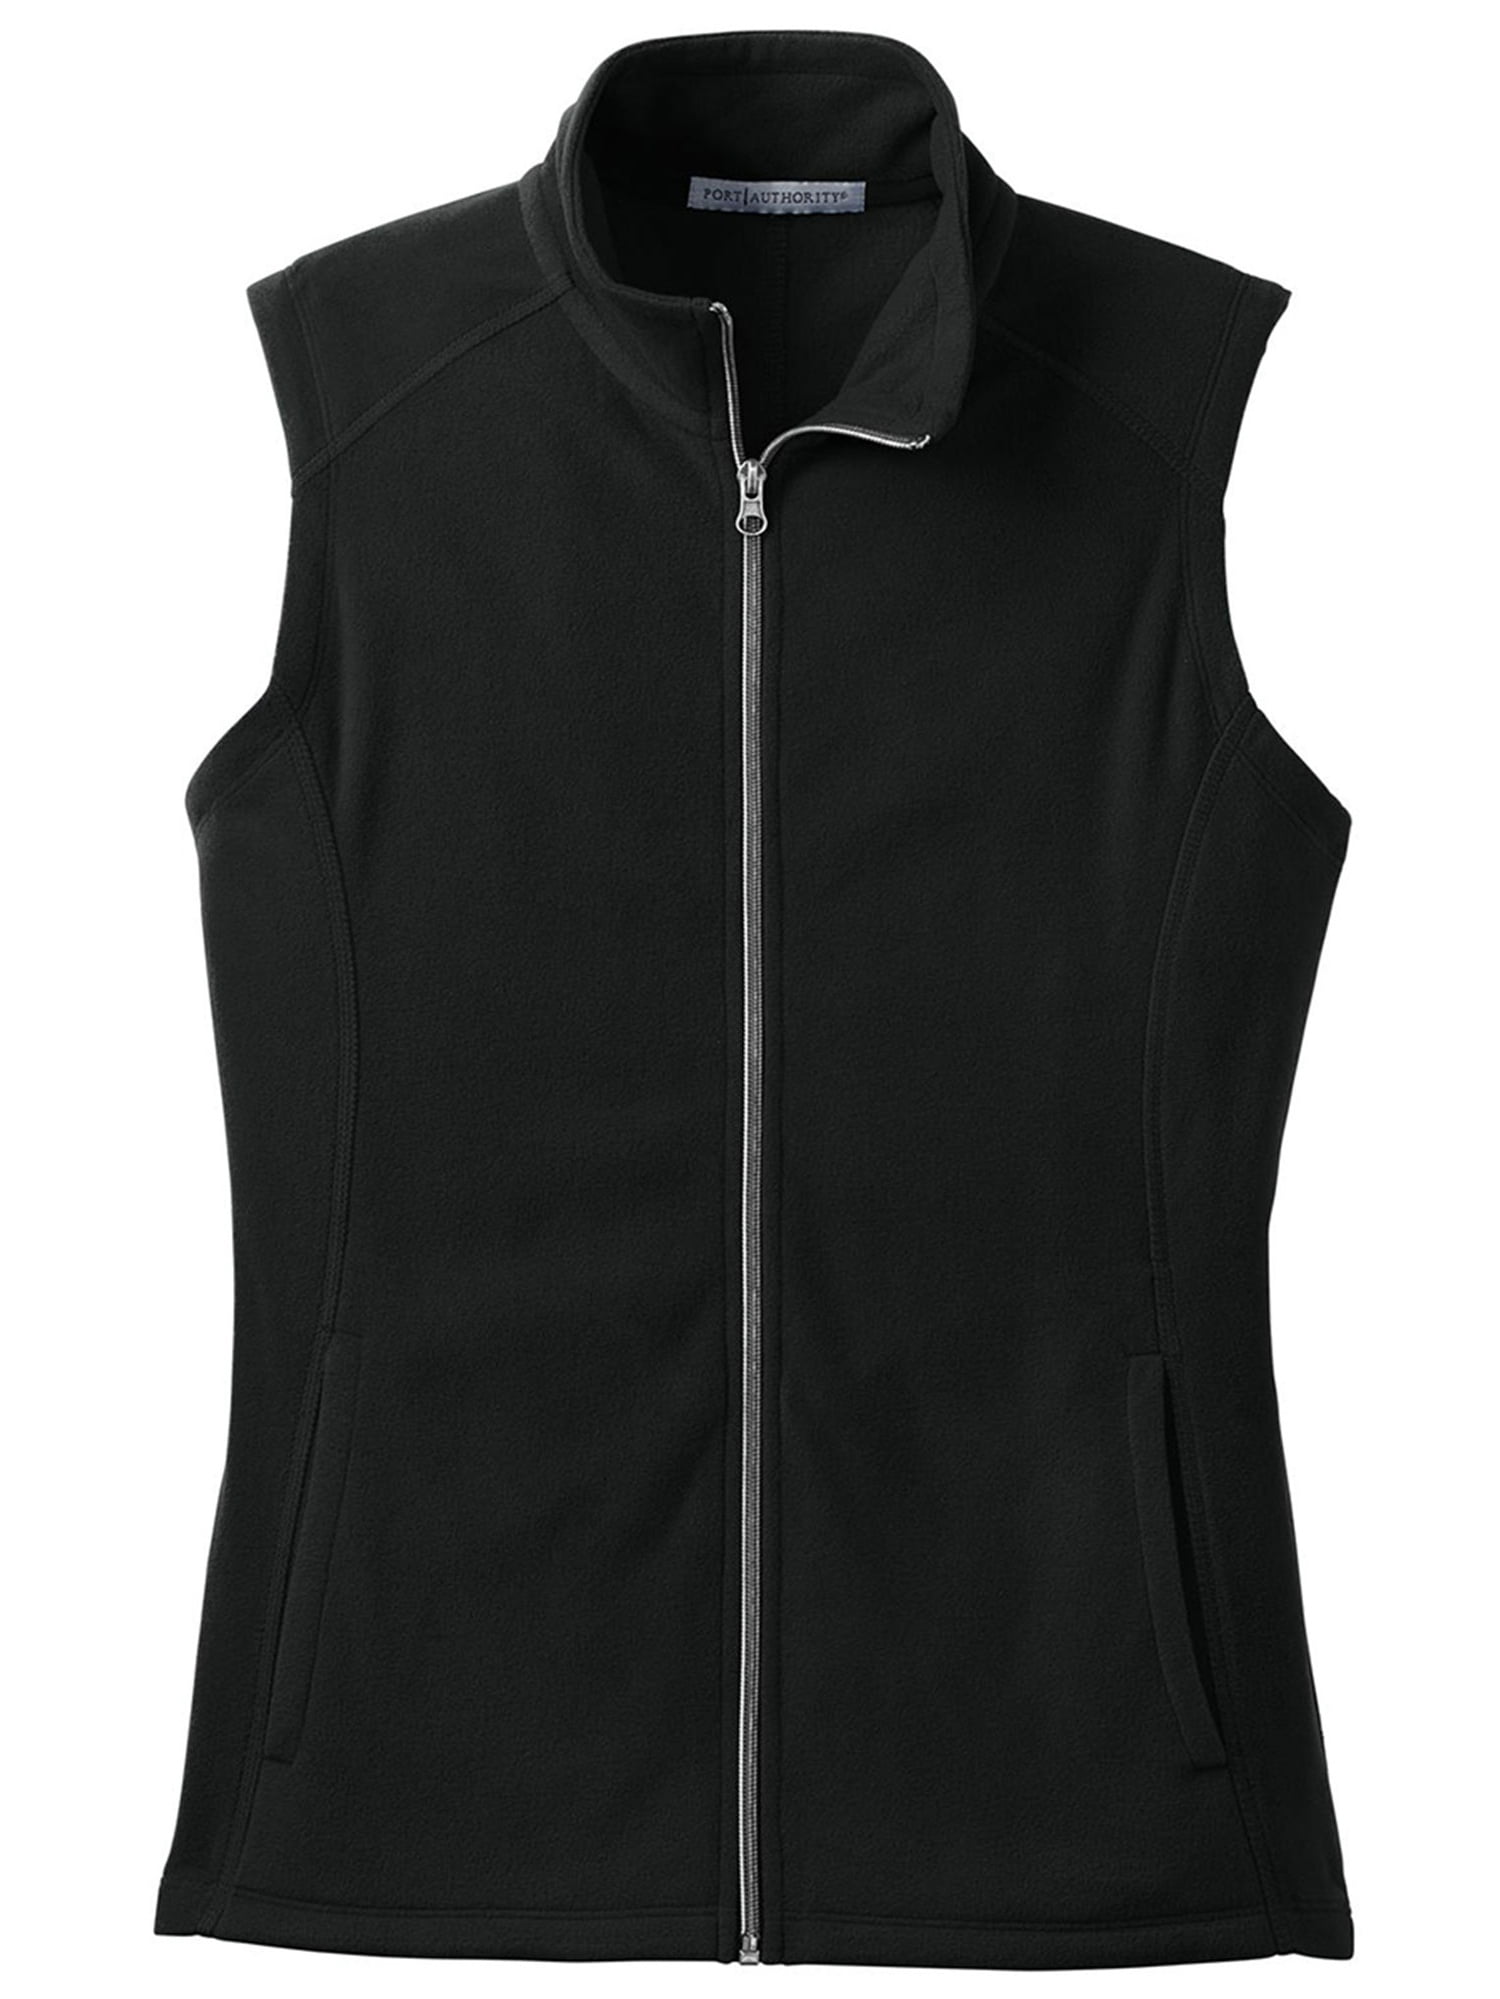 SeSe Code Women's Casual Zip Up Front Lightweight Fleece Vest with Pockets